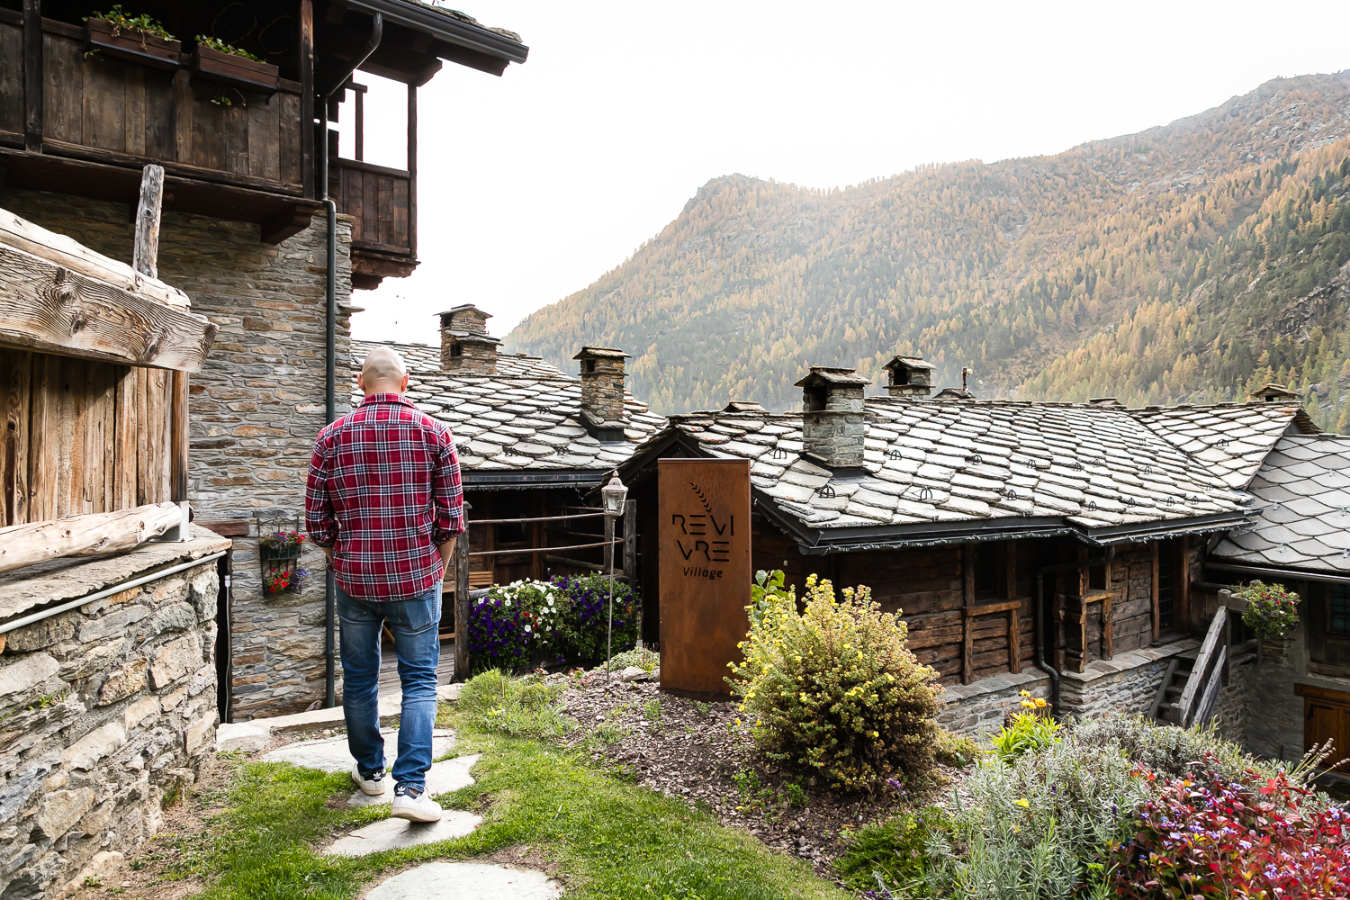 Baita per weekend Valle d'Aosta, silenzio e natura da Revivre